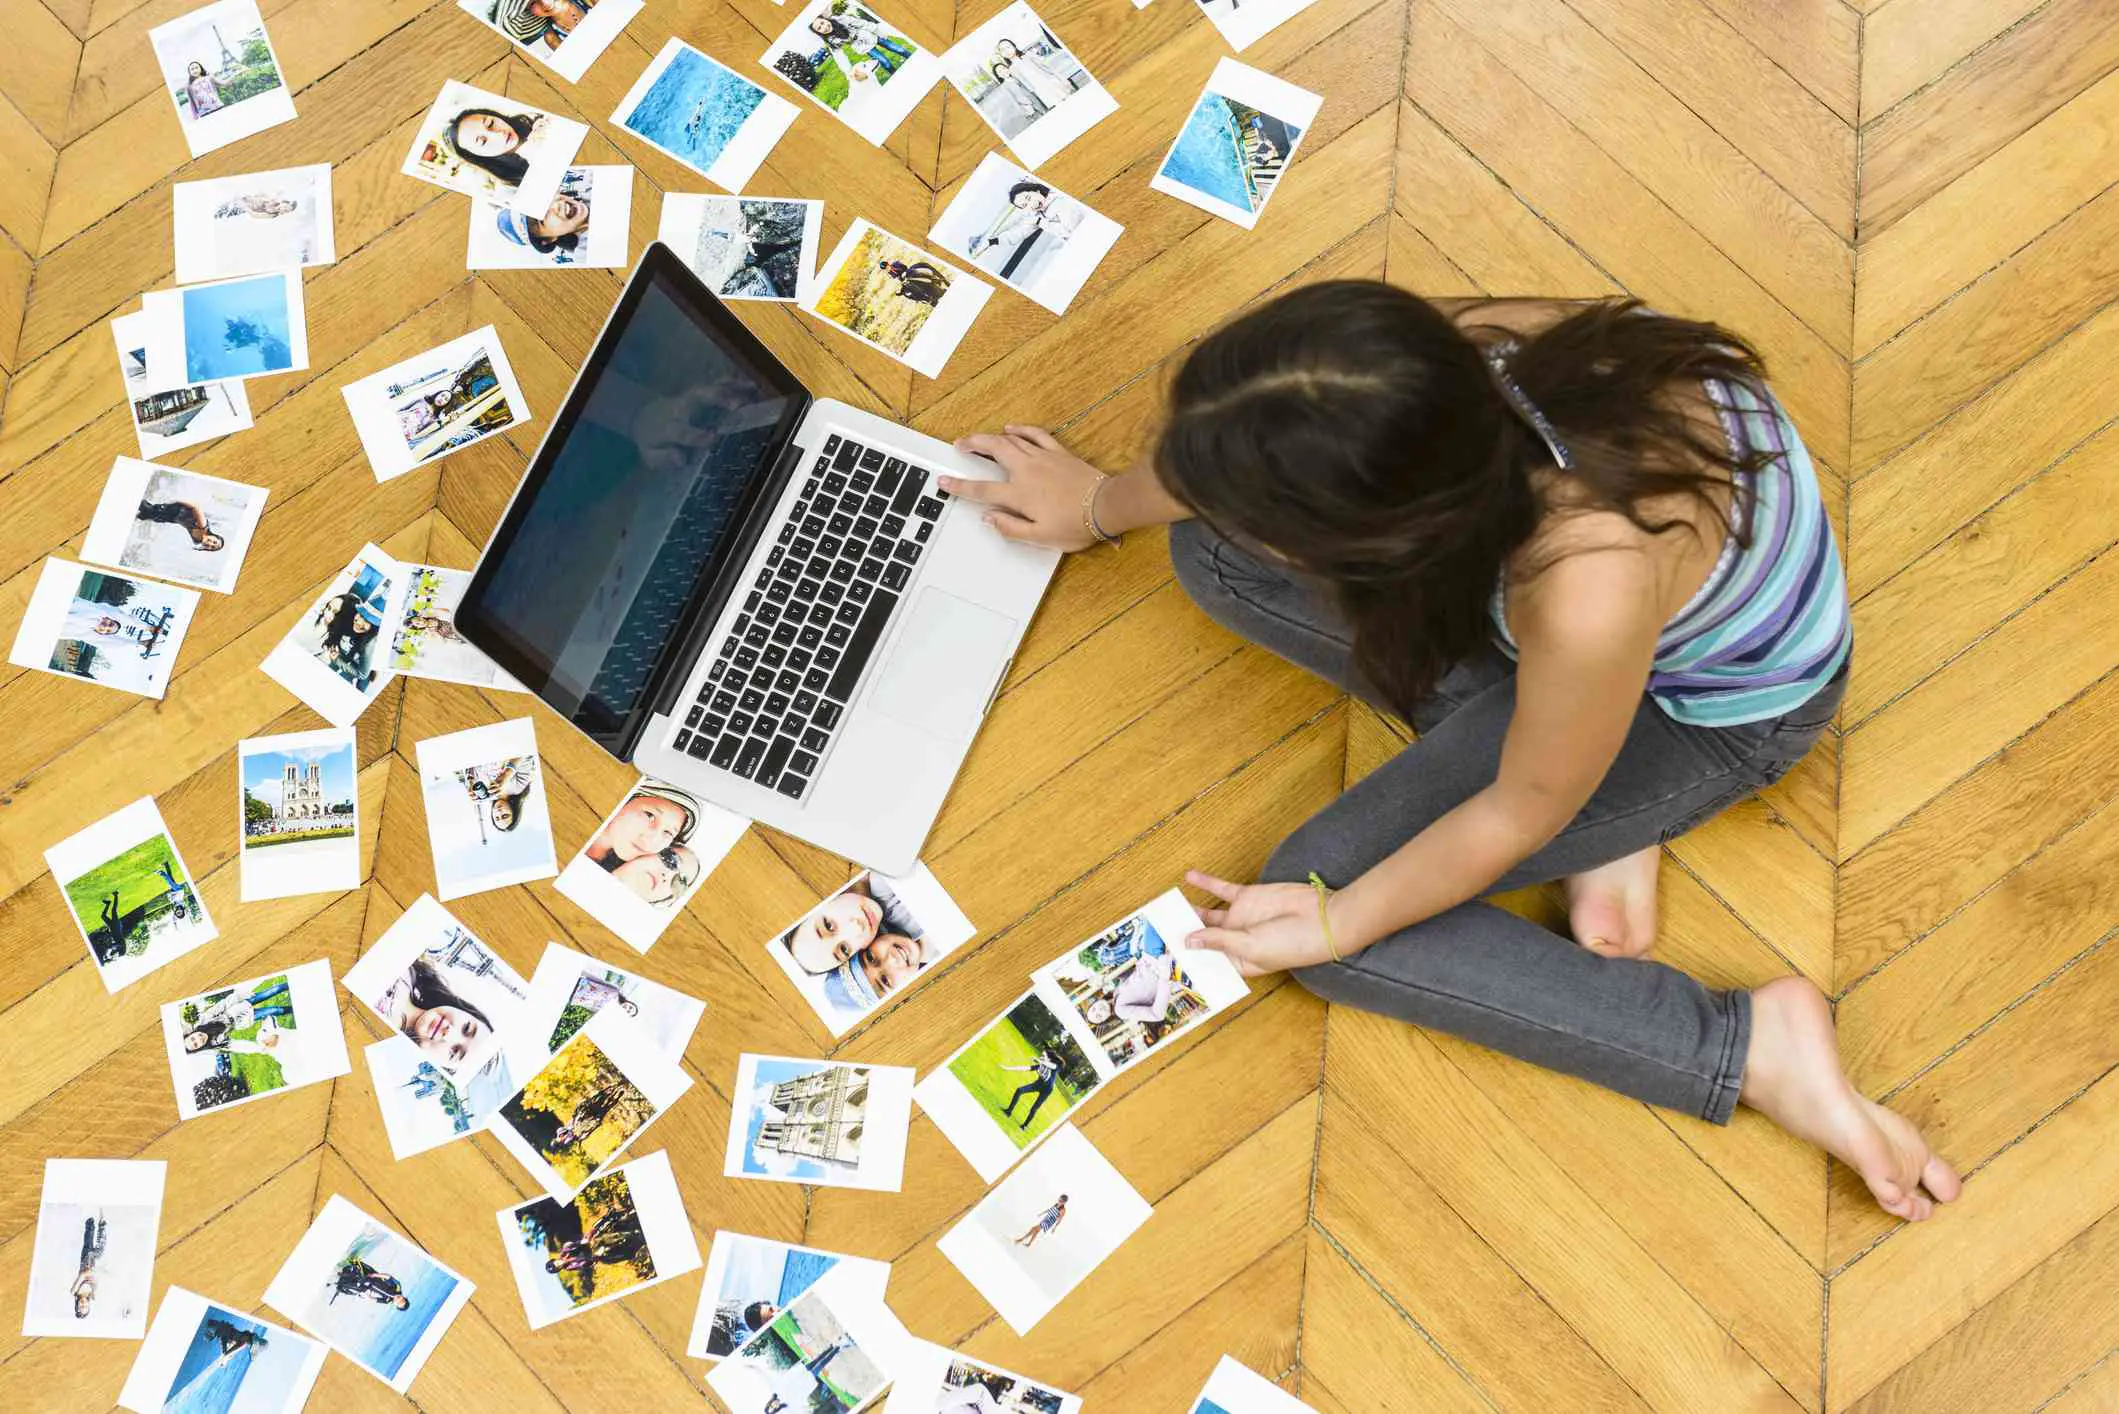 Alguém sentado no chão olhando fotos em um laptop com fotos espalhadas.